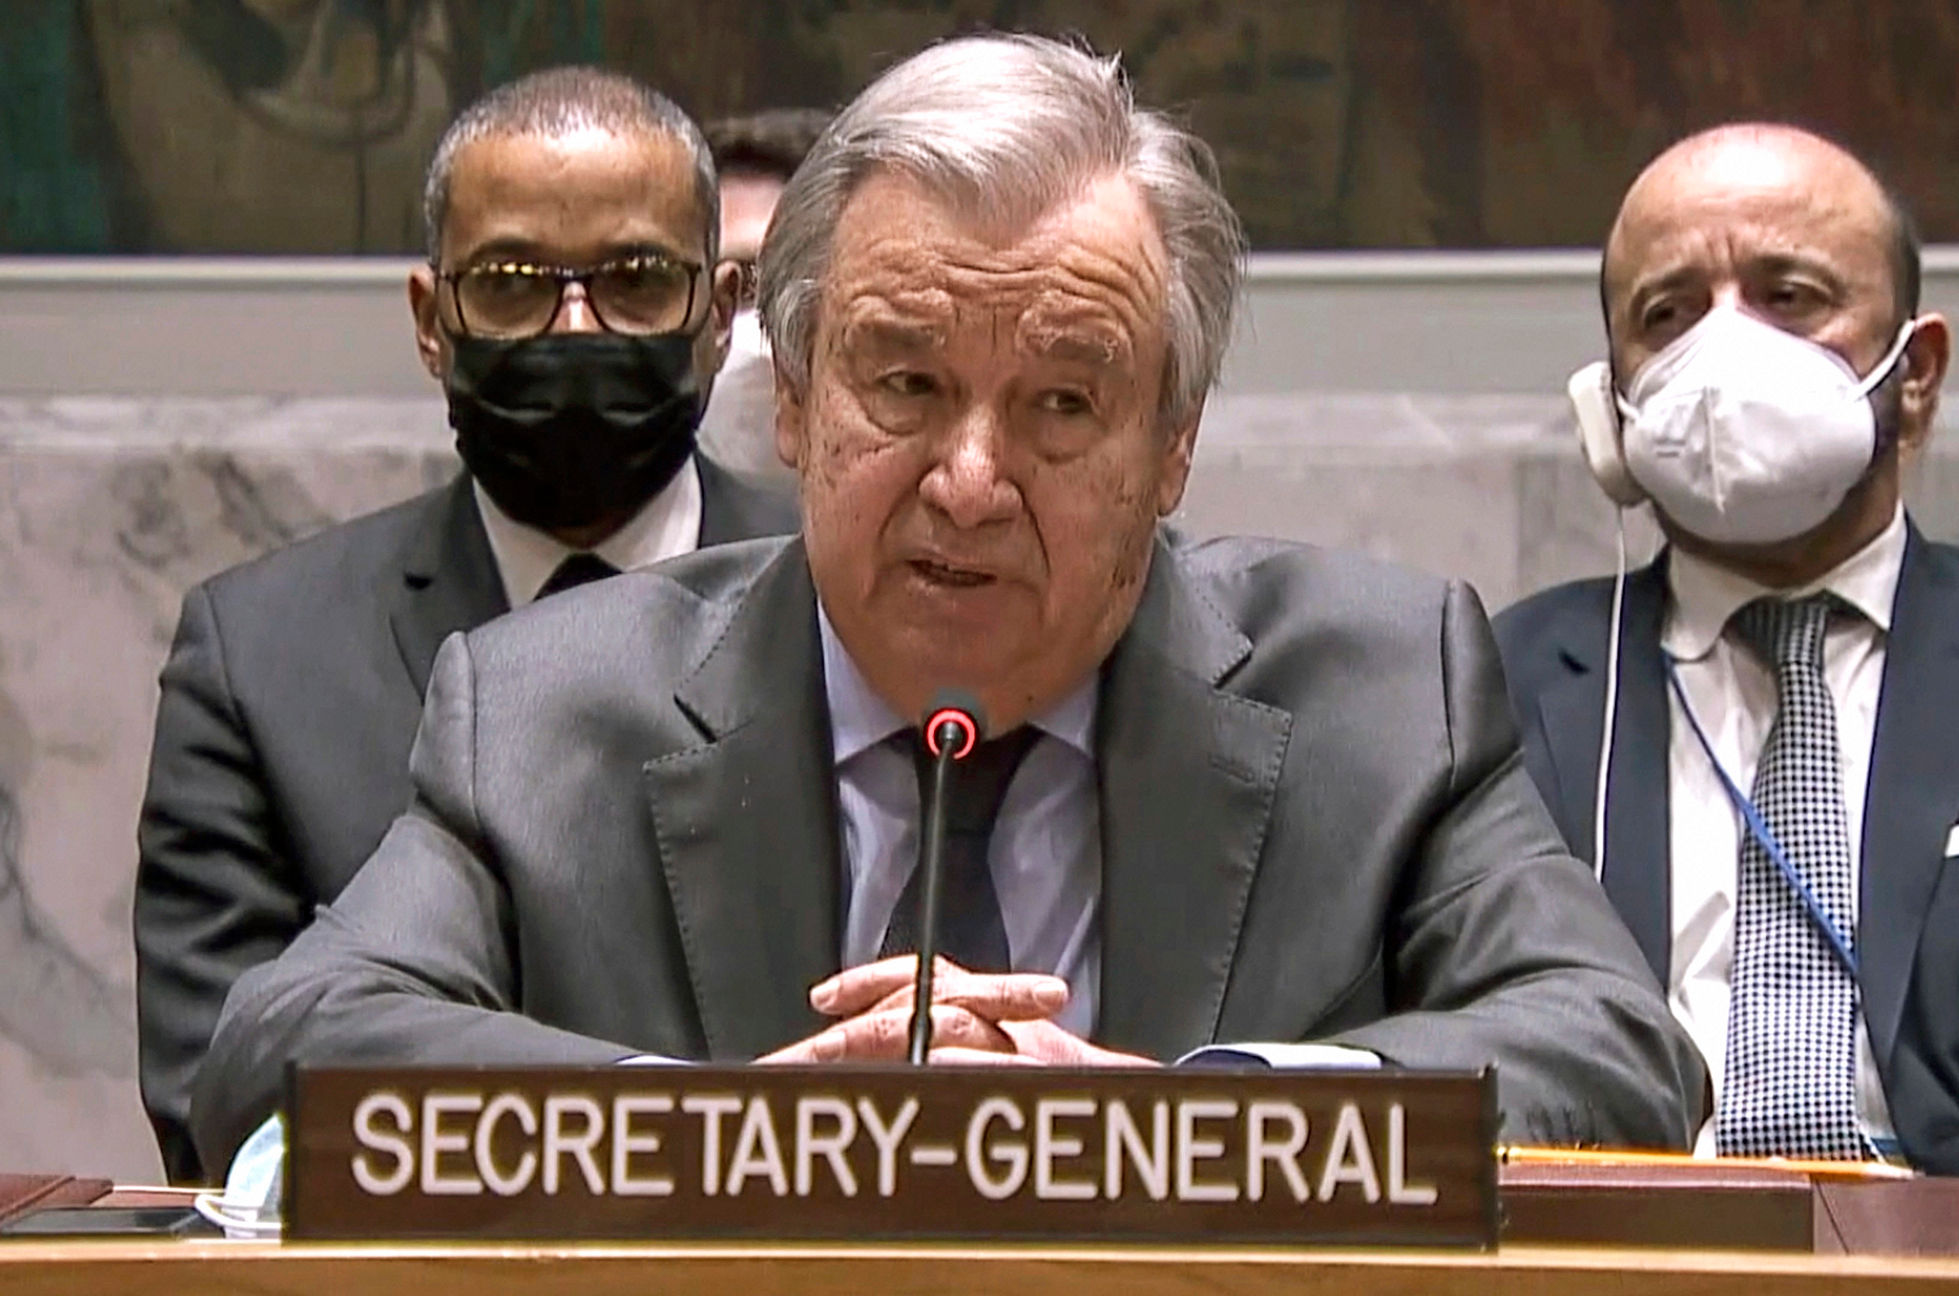 ‘European nation cannot be conquered’: UN chief Antonio Guterres on besieged Ukraine